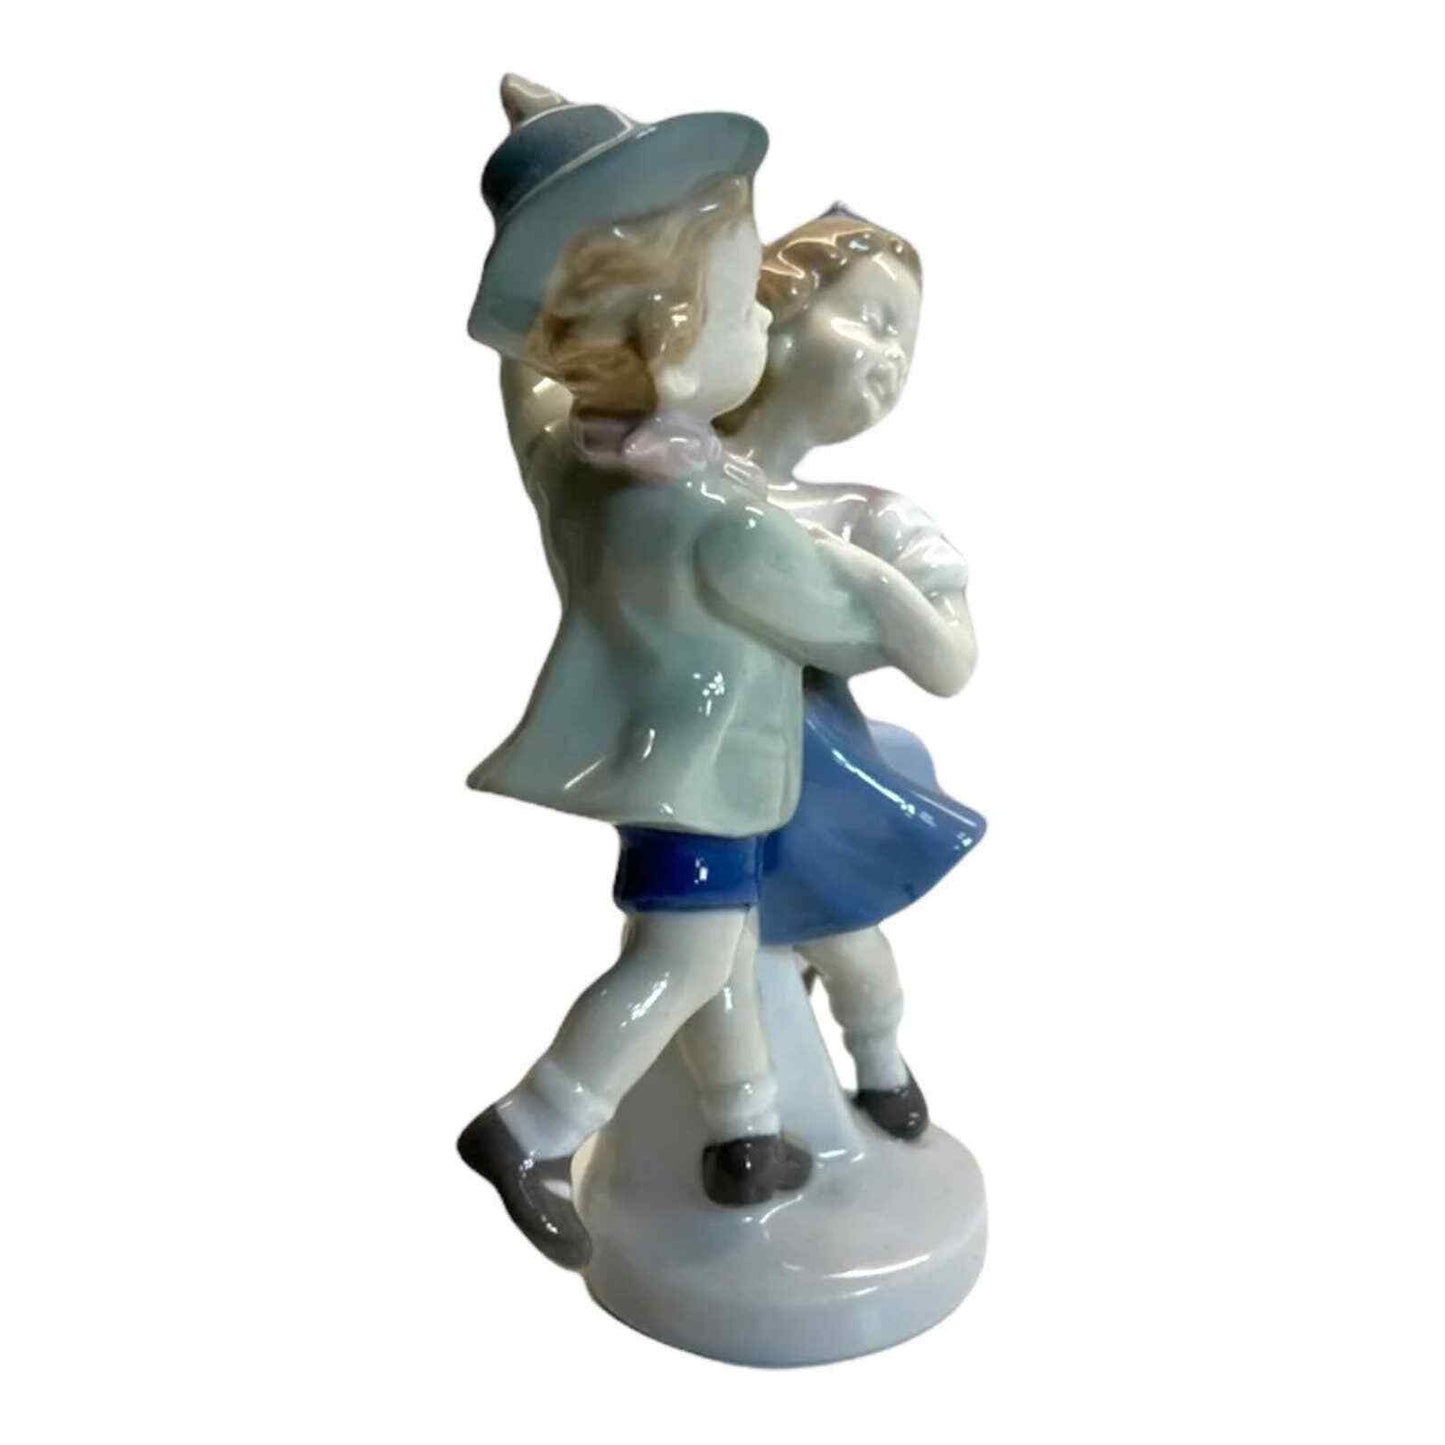 Carl Scheidig Figurine Boy and Girl Dancing Vintage Decor Porcelain Germany